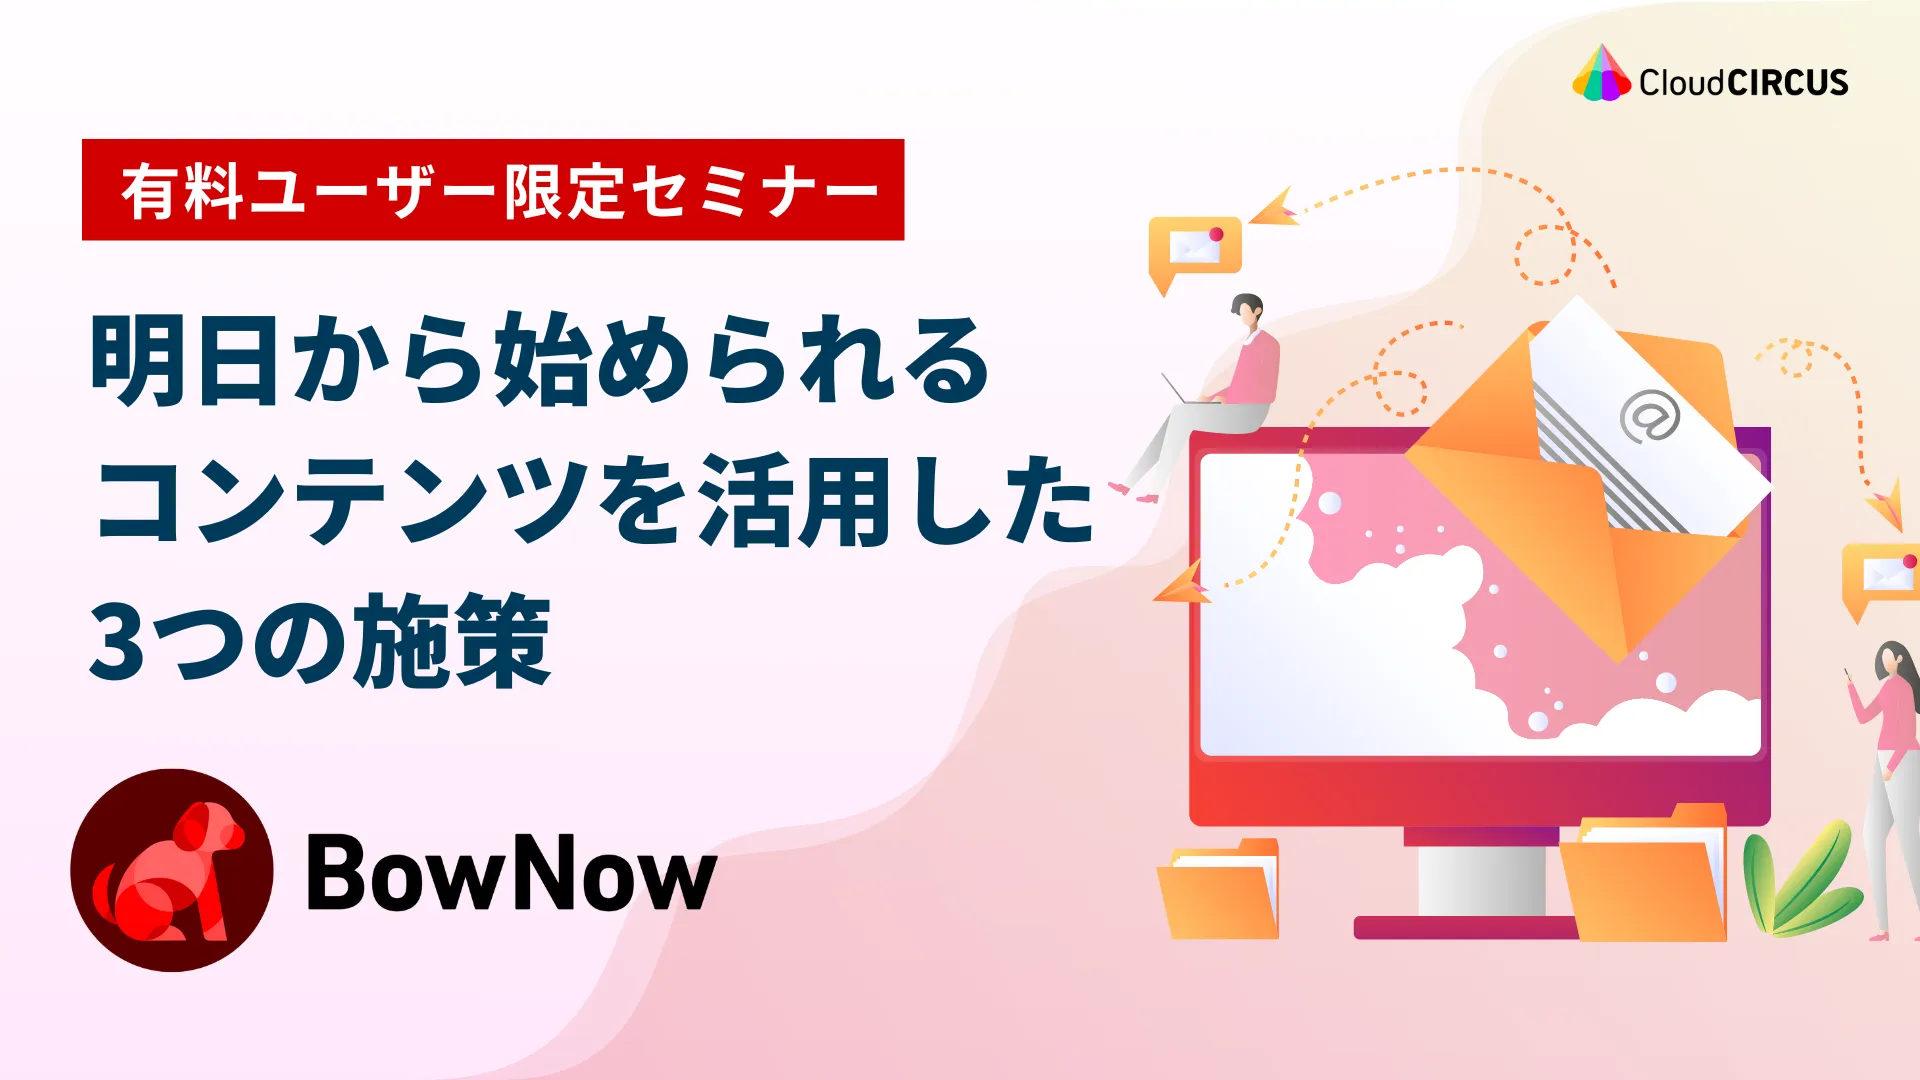 【3月25日(月)】BowNowリスタート勉強会